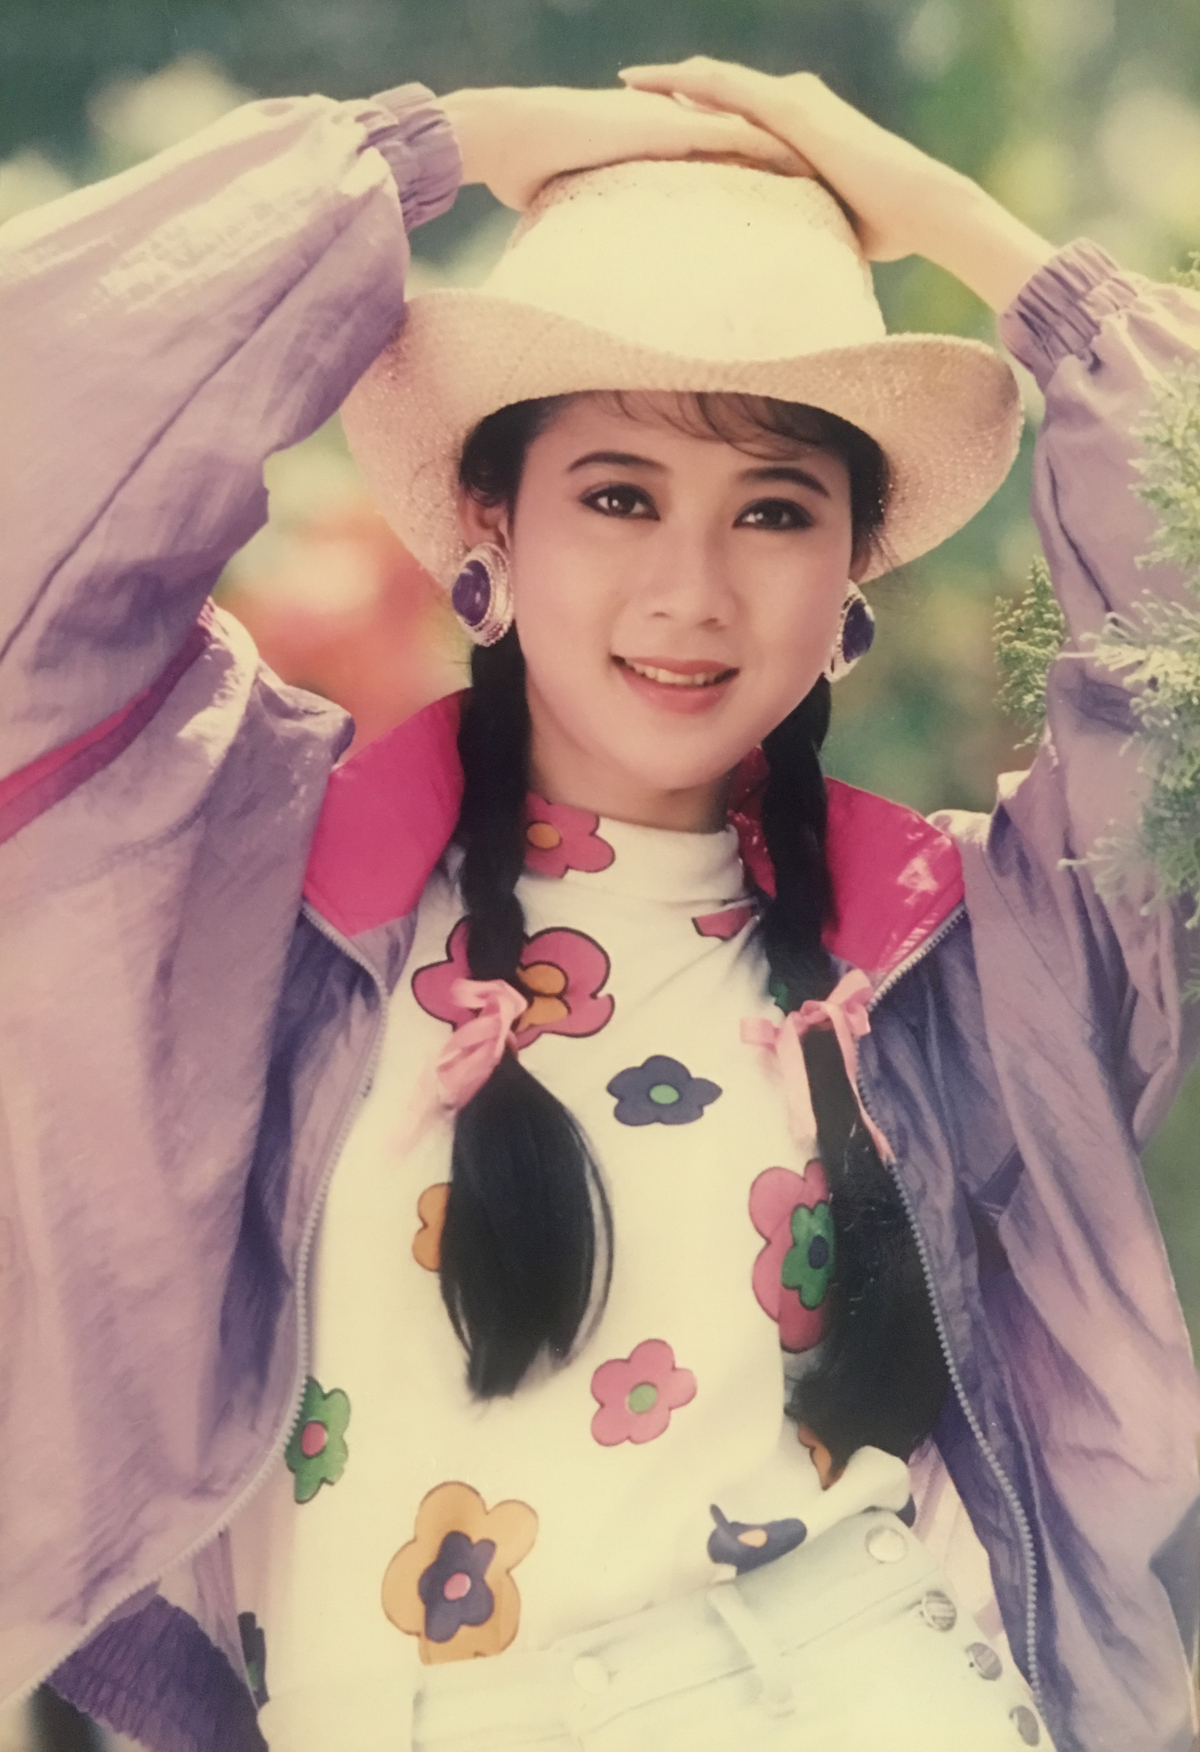 Đẹp tựa thiên thần và giọng hát ngọt ngào, Diễm Hương là một trong những ca sĩ nữ hàng đầu của Việt Nam. Nếu bạn chưa từng nghe những bài hát của cô, hãy xem hình ảnh của Diễm Hương để khám phá thế giới âm nhạc đầy màu sắc và cảm xúc.